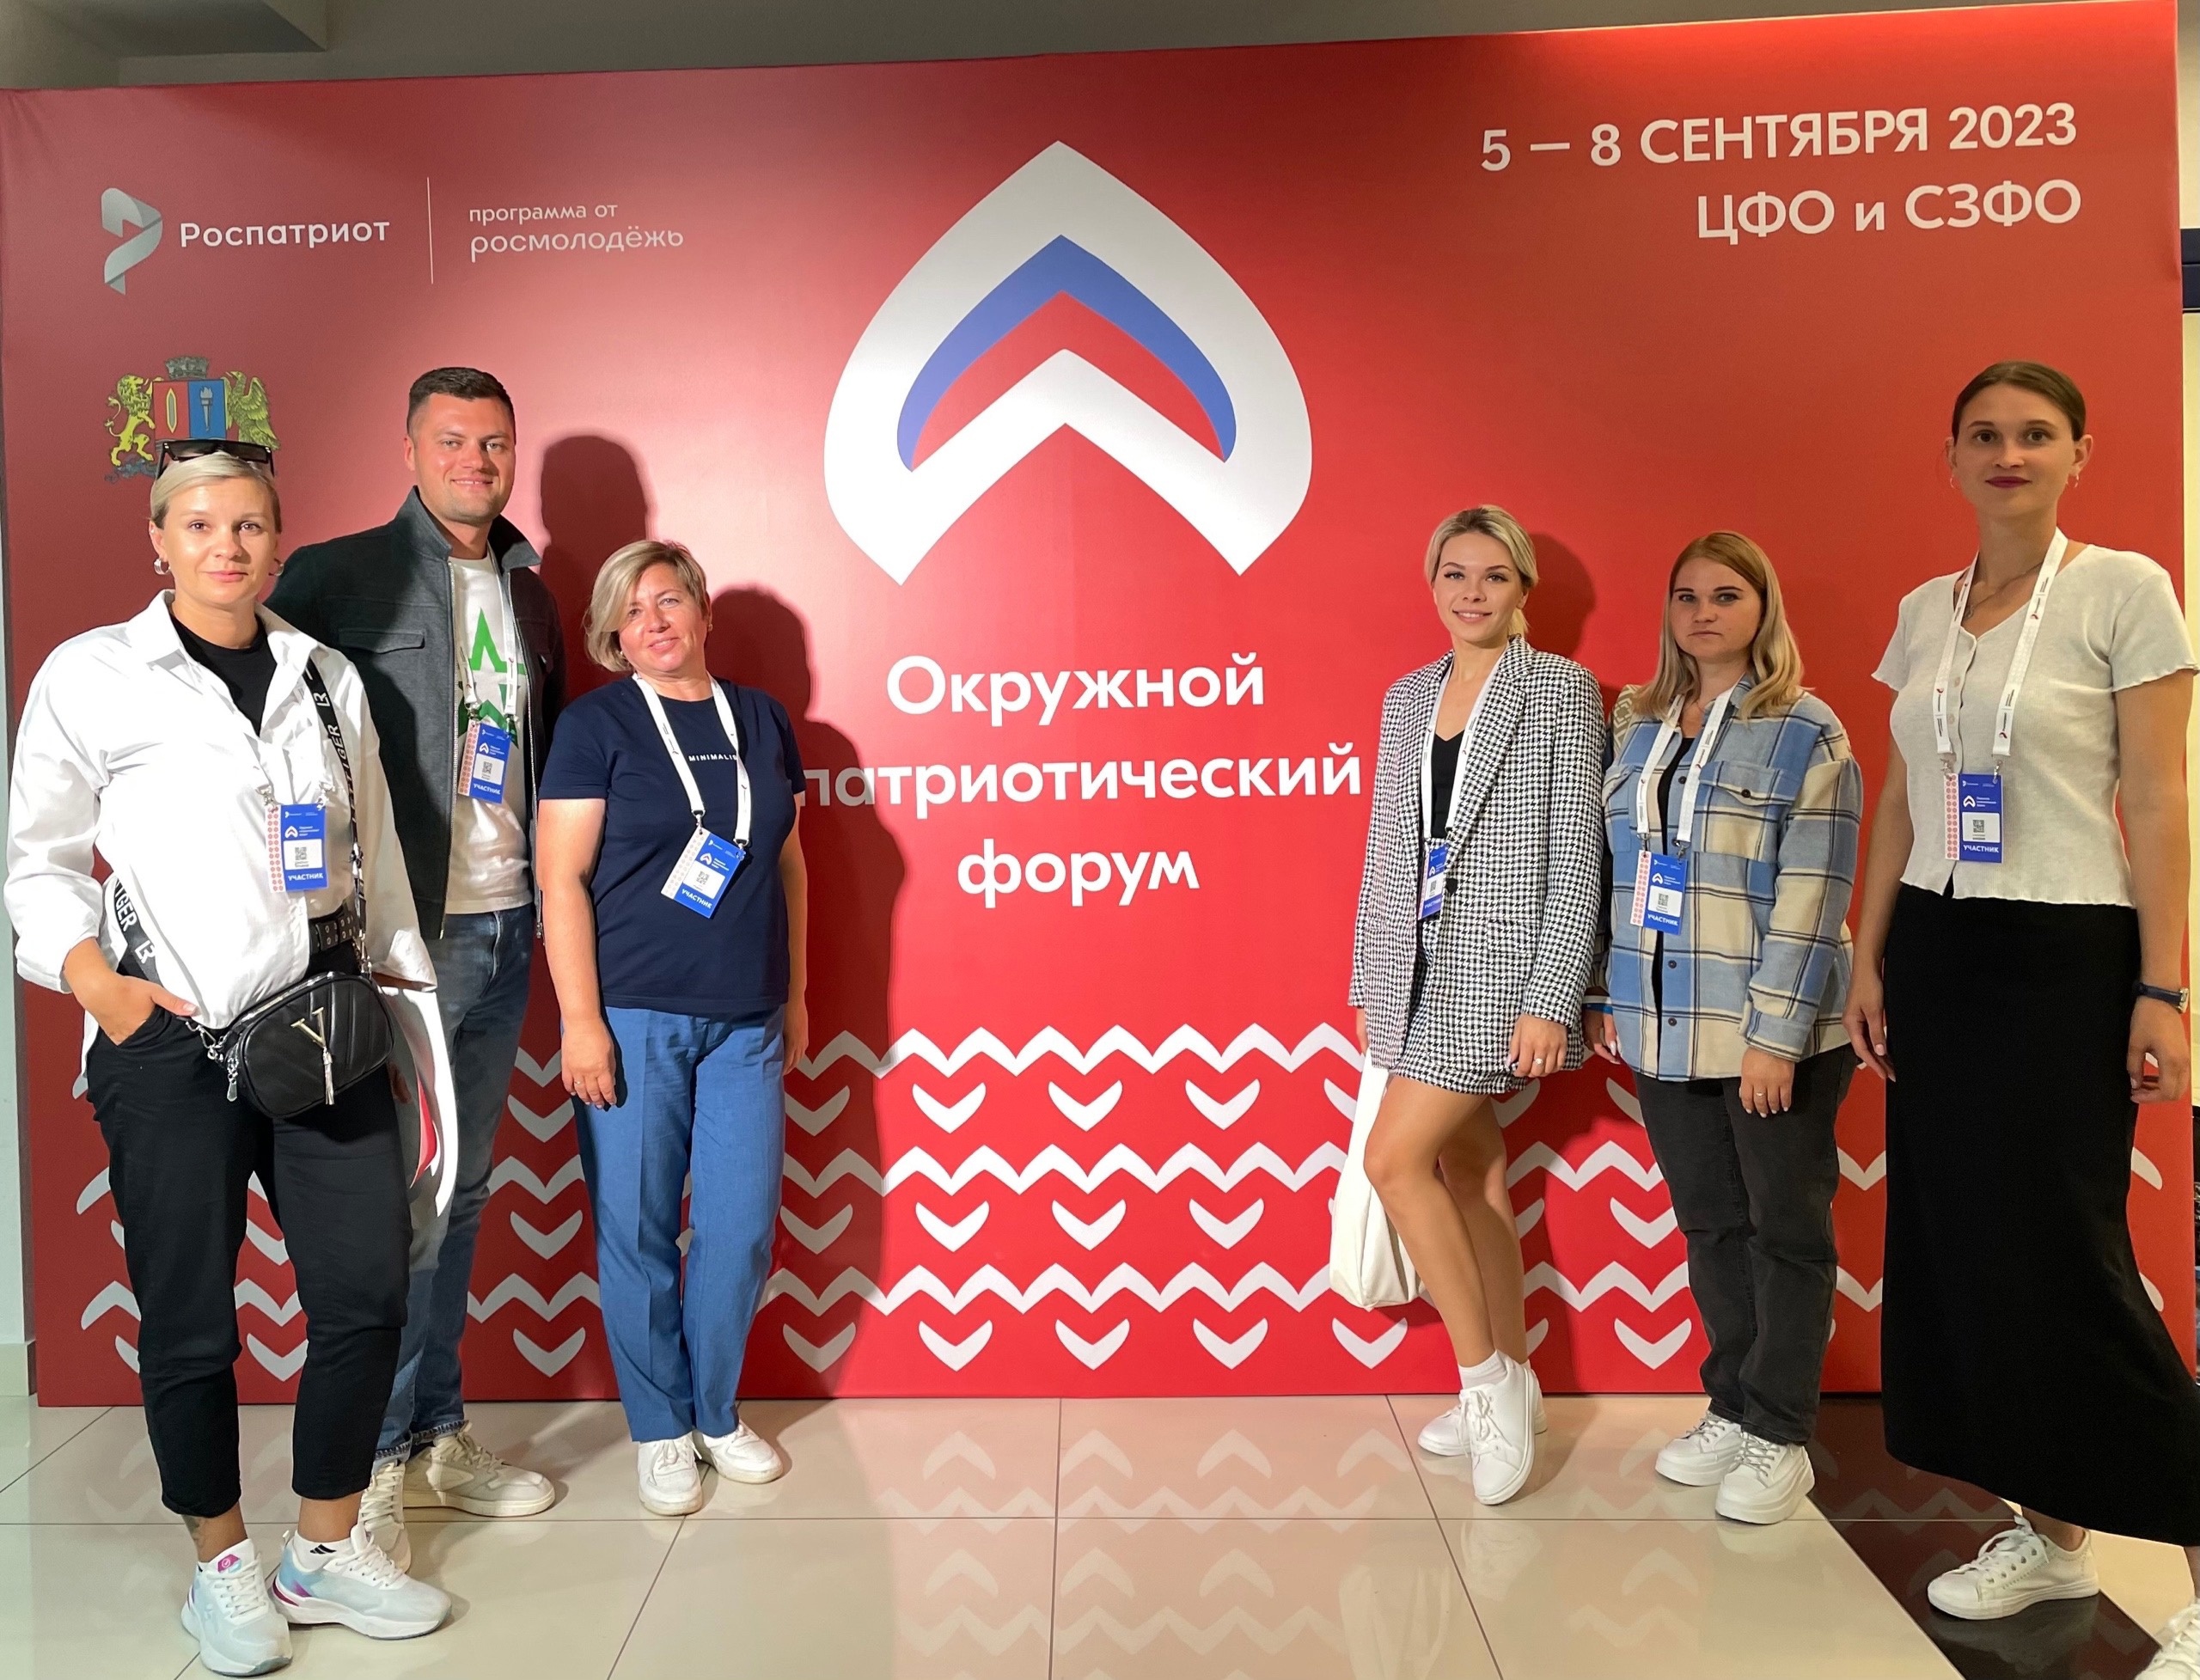 Начальник отдела молодёжной политики Жанна Зотова в составе региональной делегации отправилась на Окружной патриотический форум.